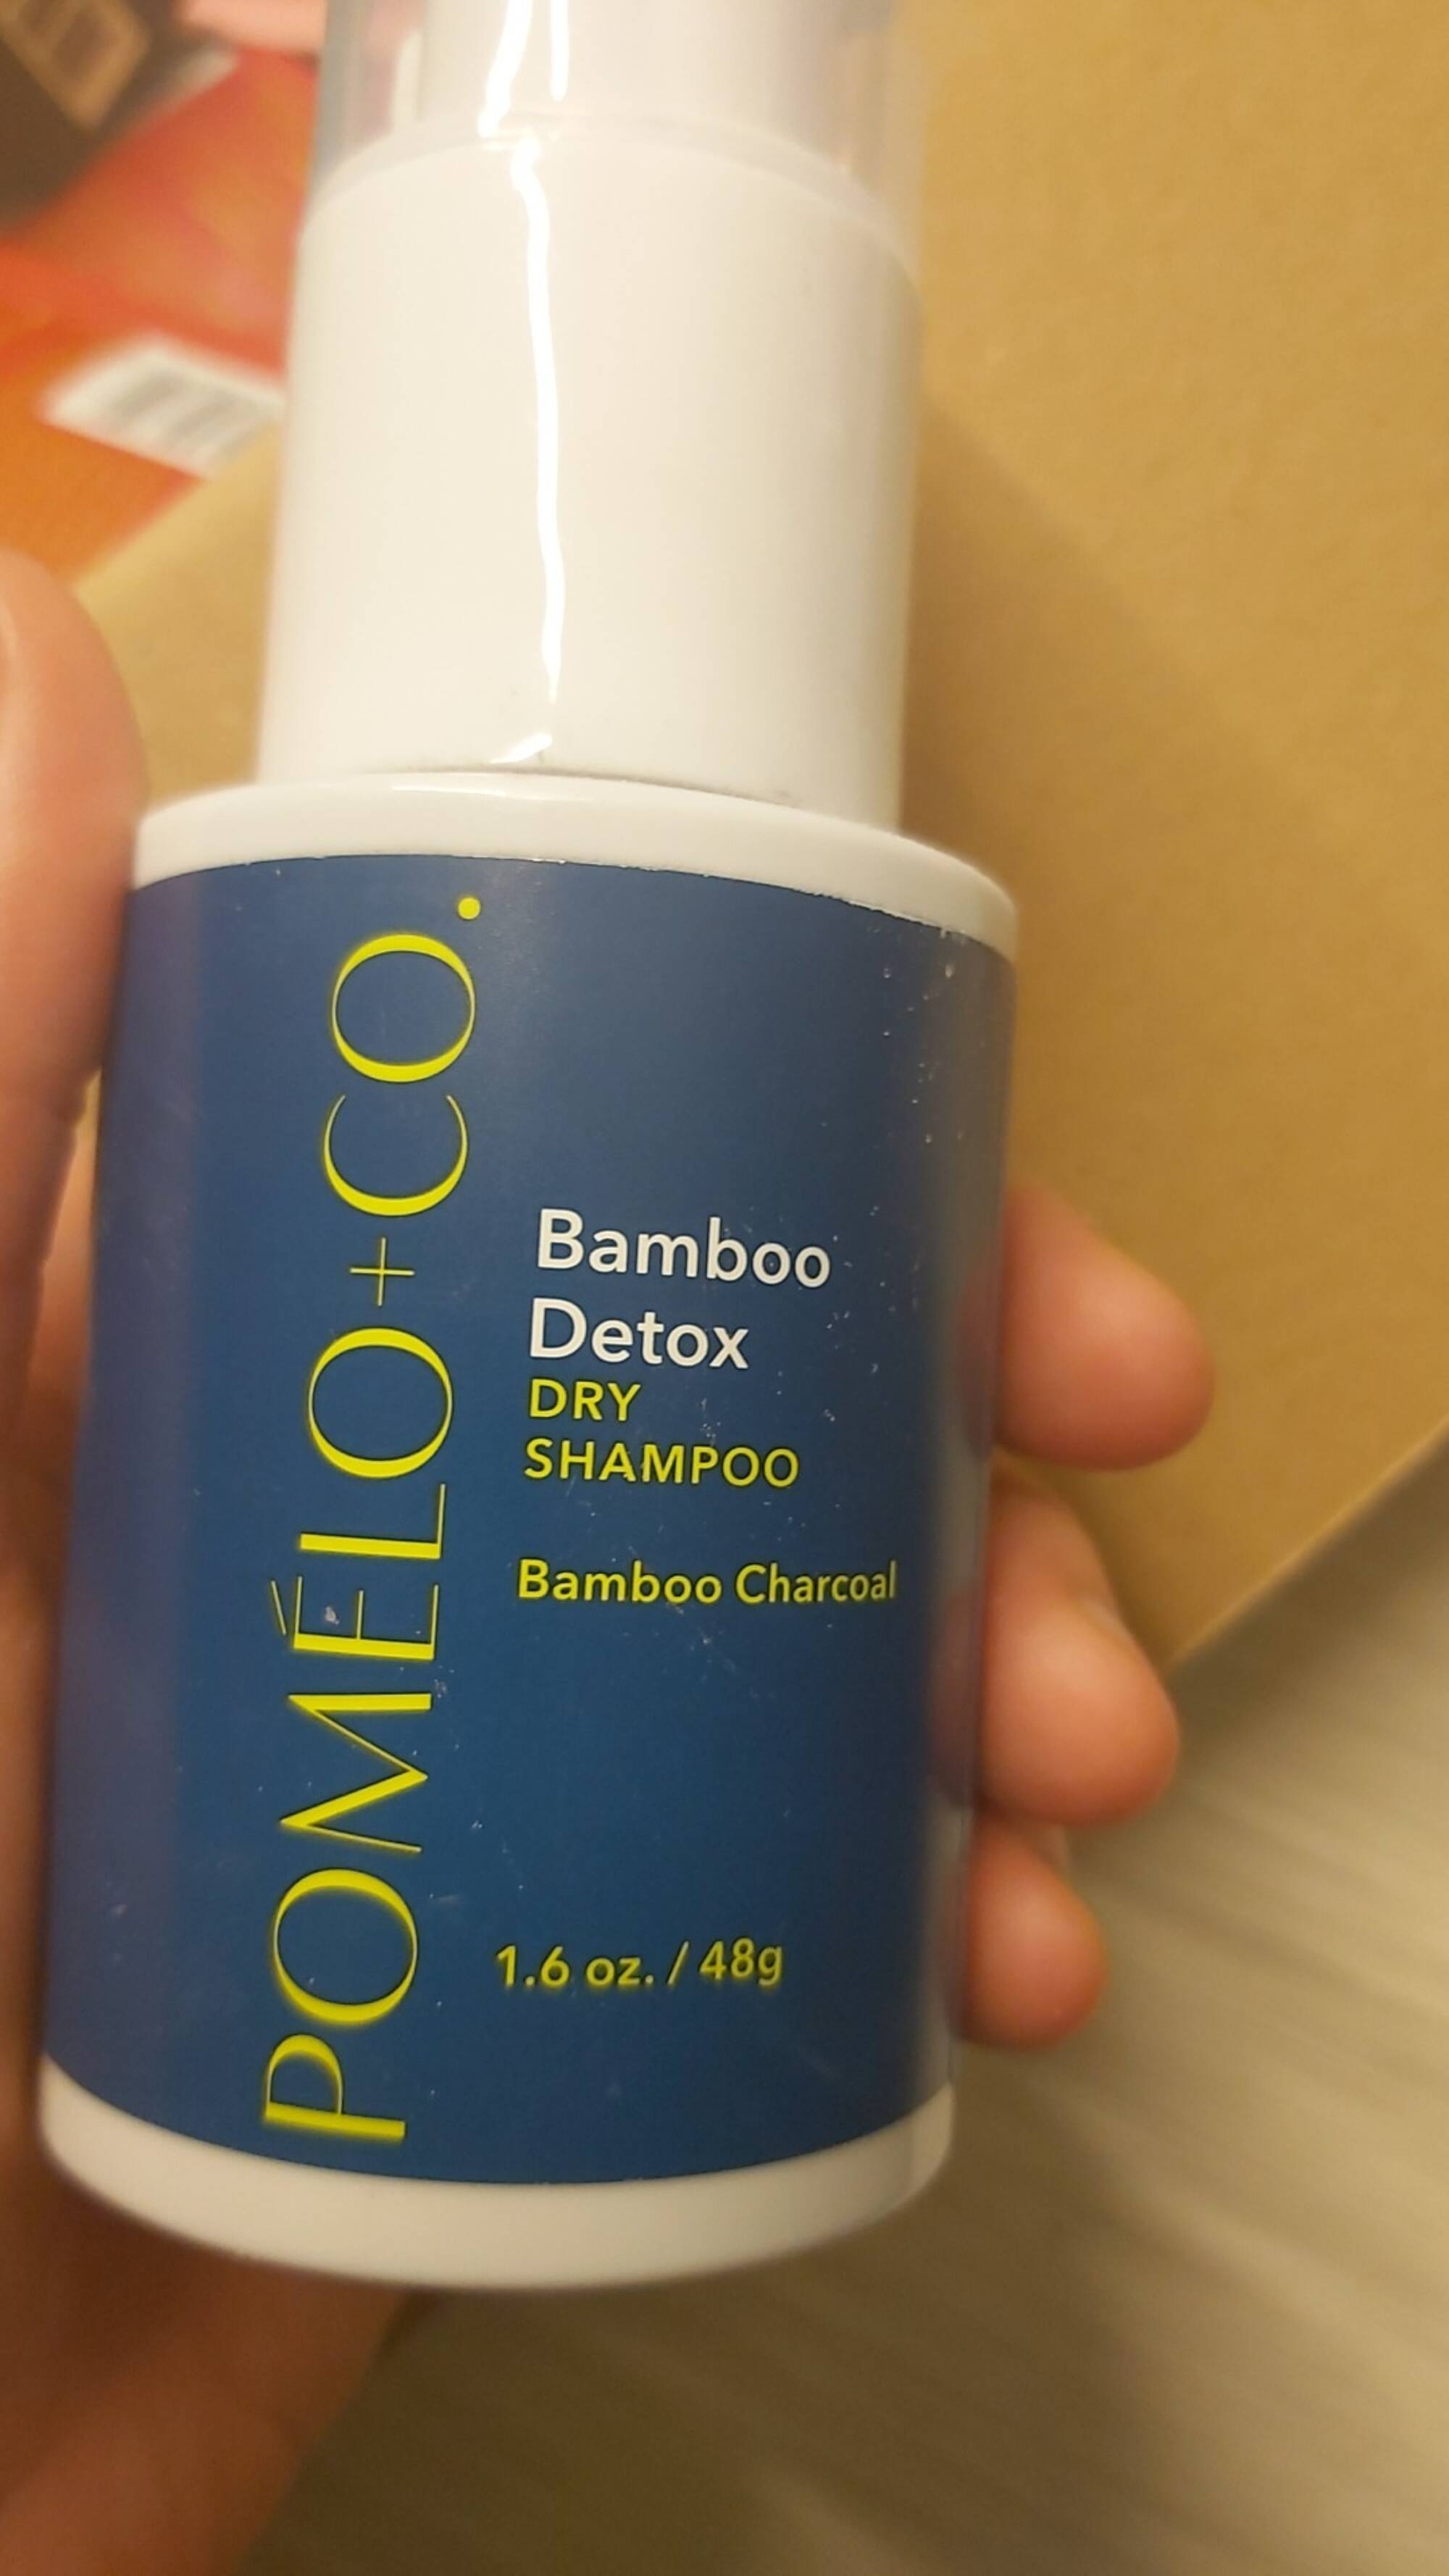 POMELO-CO - Bamboo detox - Dry shampoo